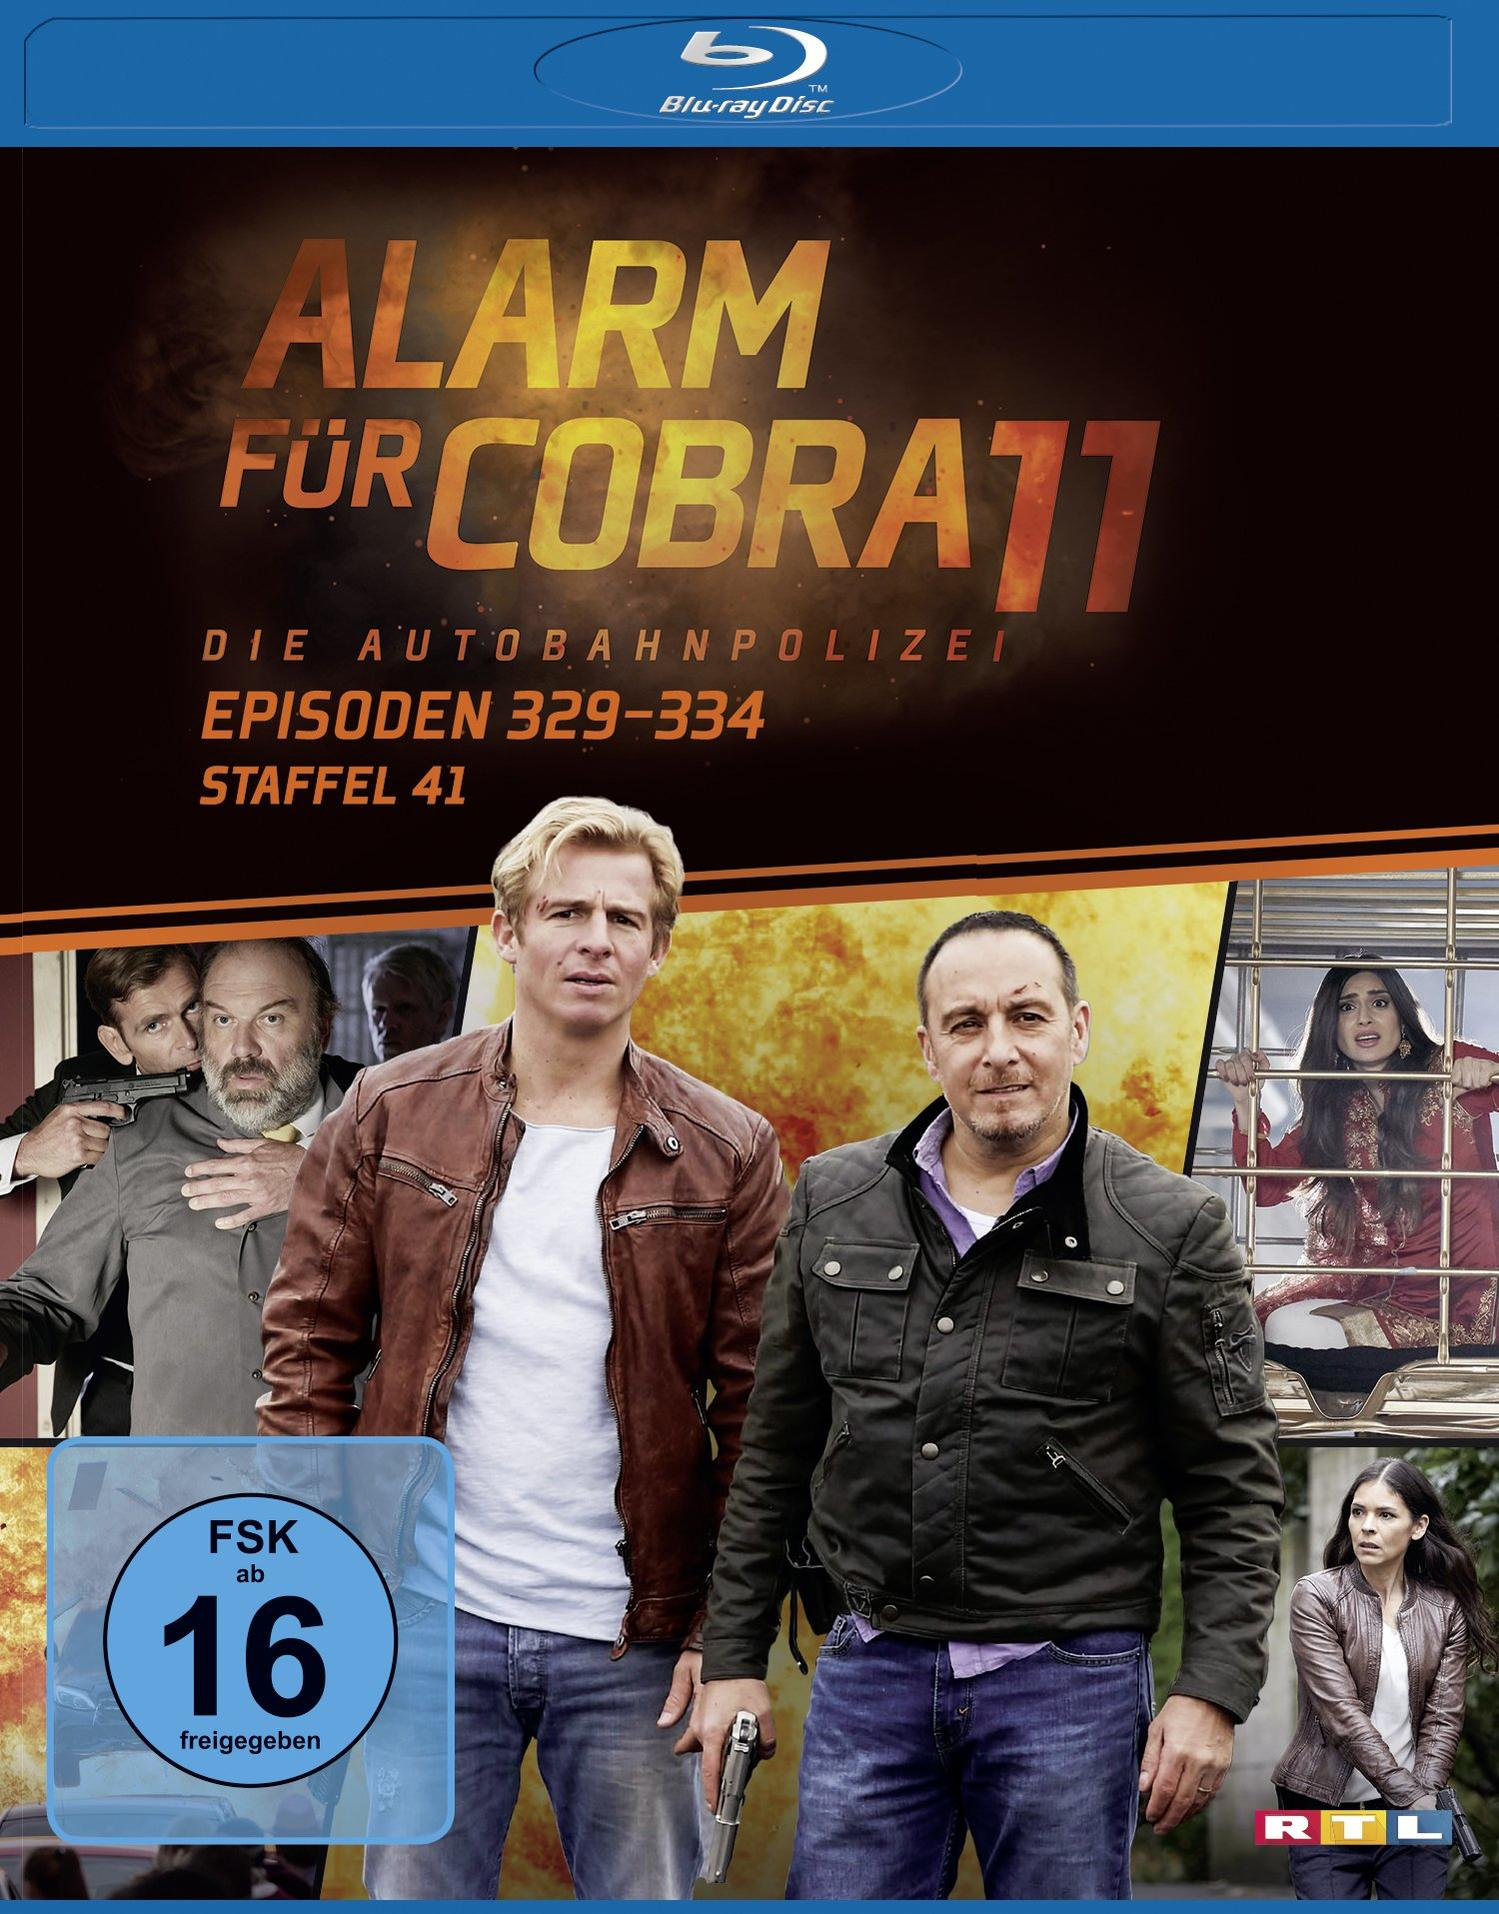 41 Alarm - 11 für Cobra Blu-ray Staffel